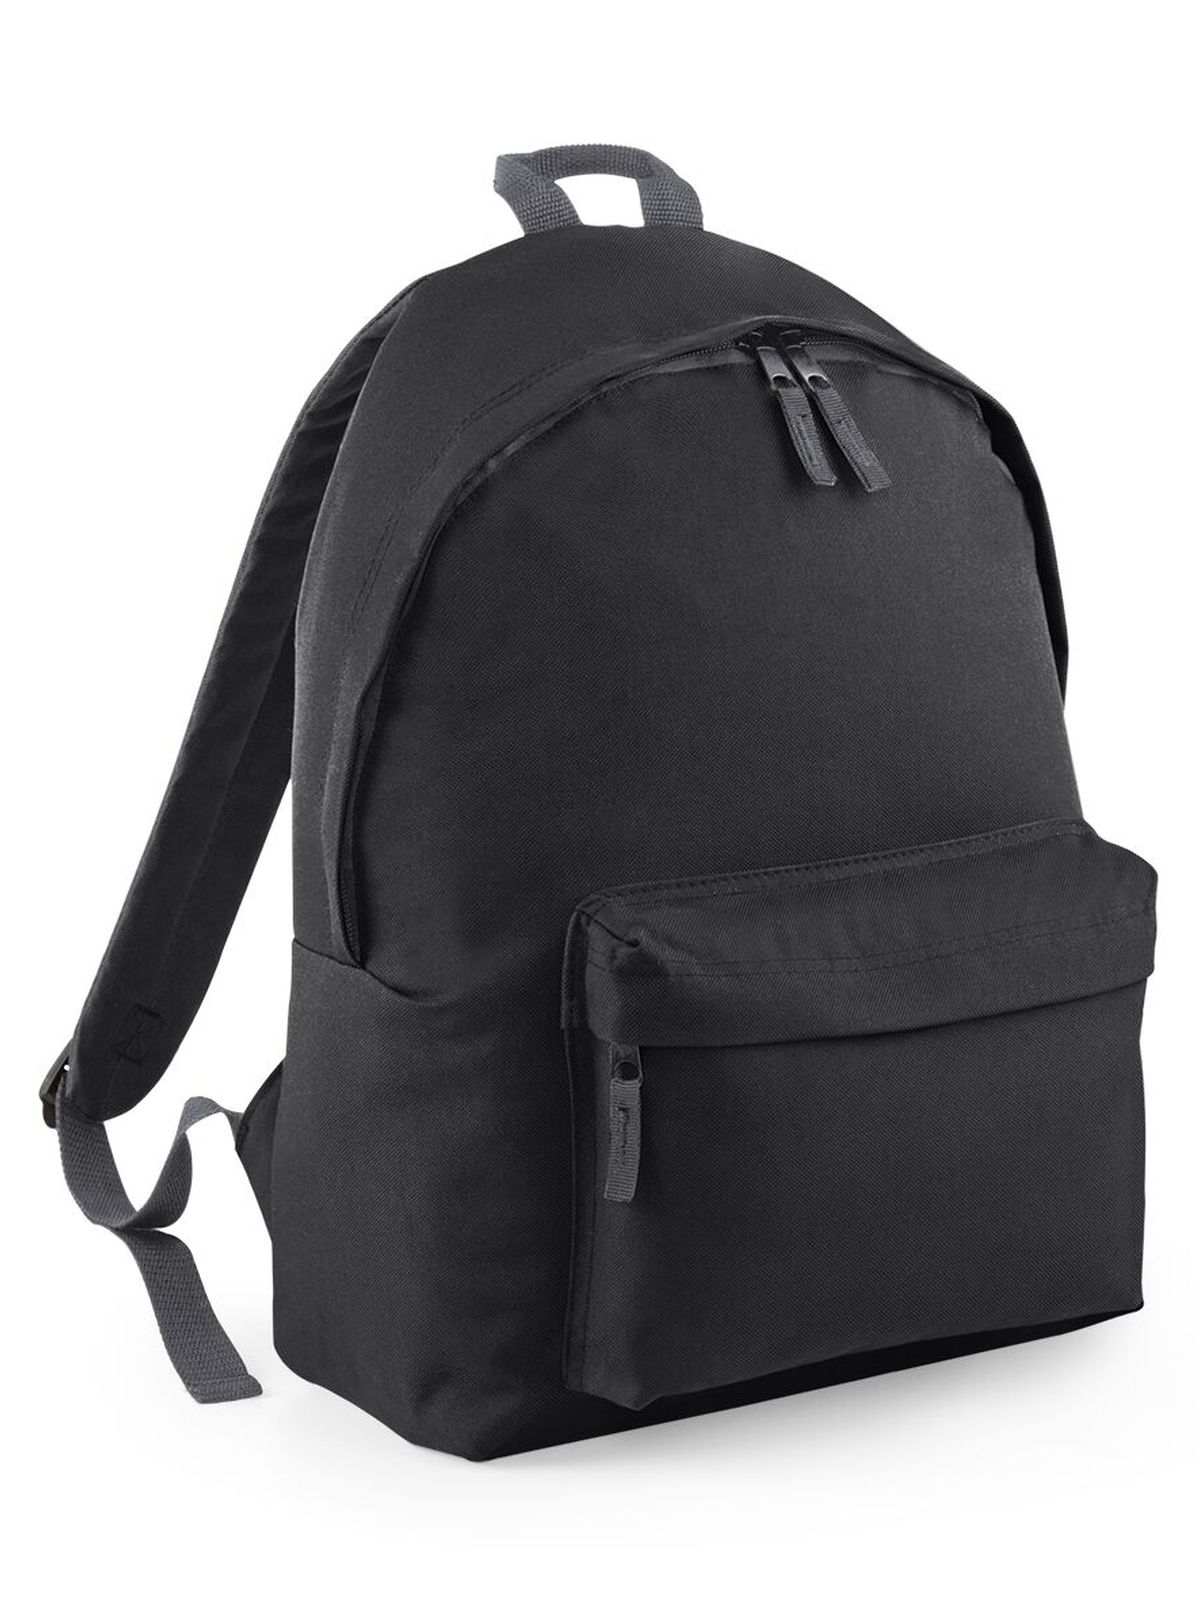 original-fashion-backpack-black.webp